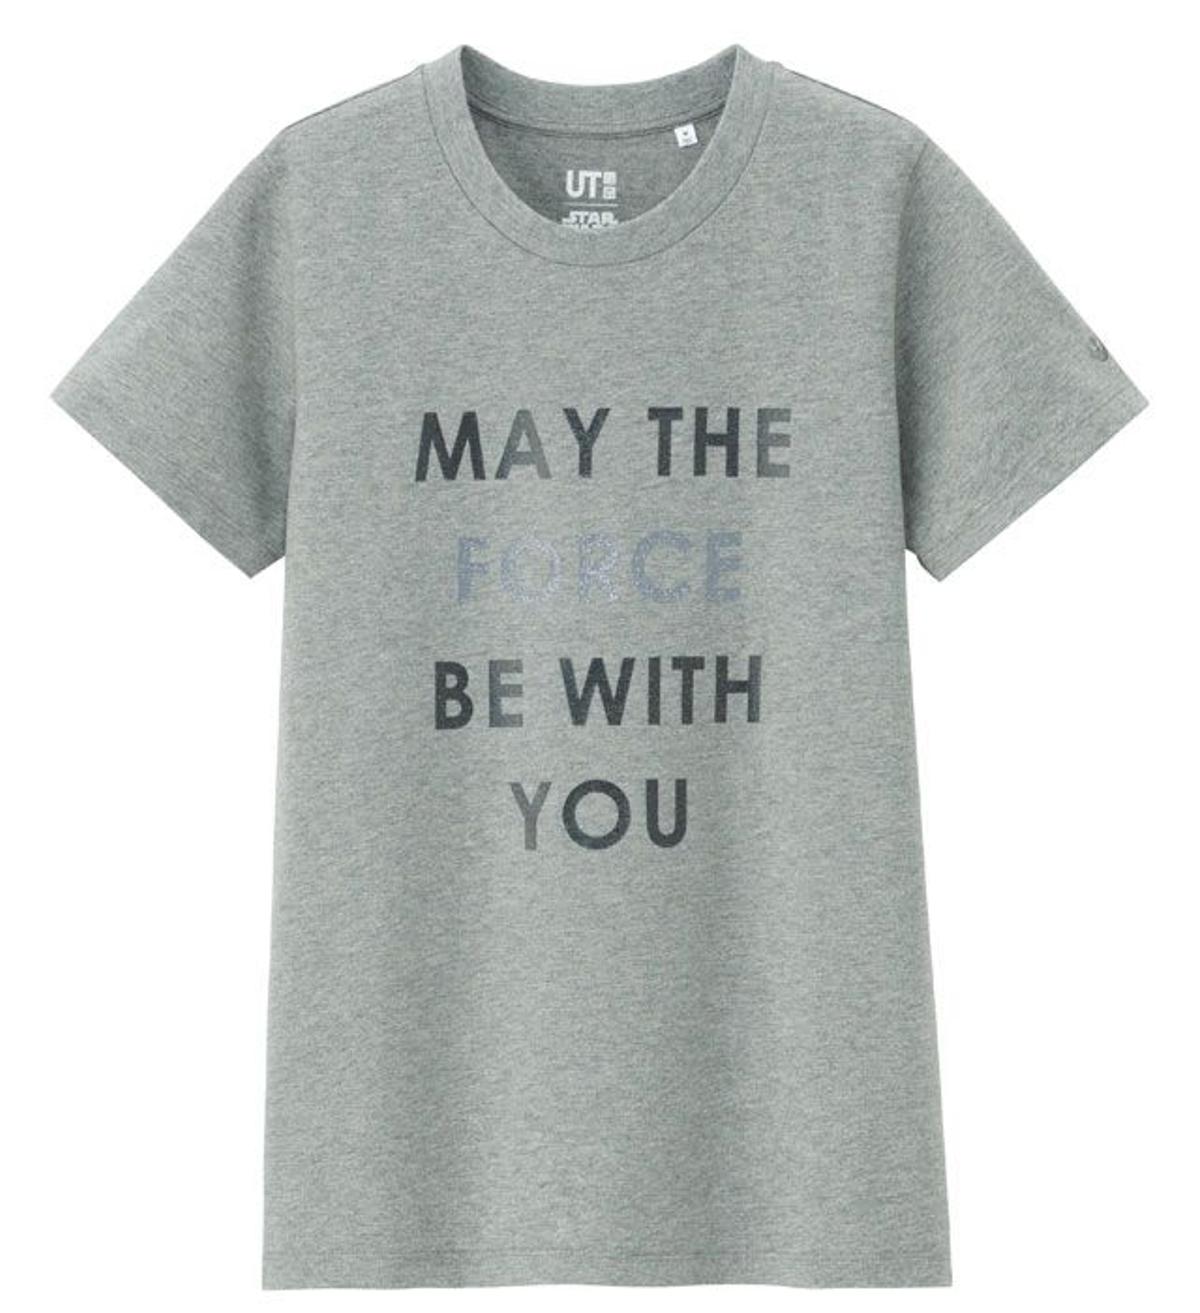 La moda se inspira en Star Wars: camiseta con 'leit motiv' de Uniqlo